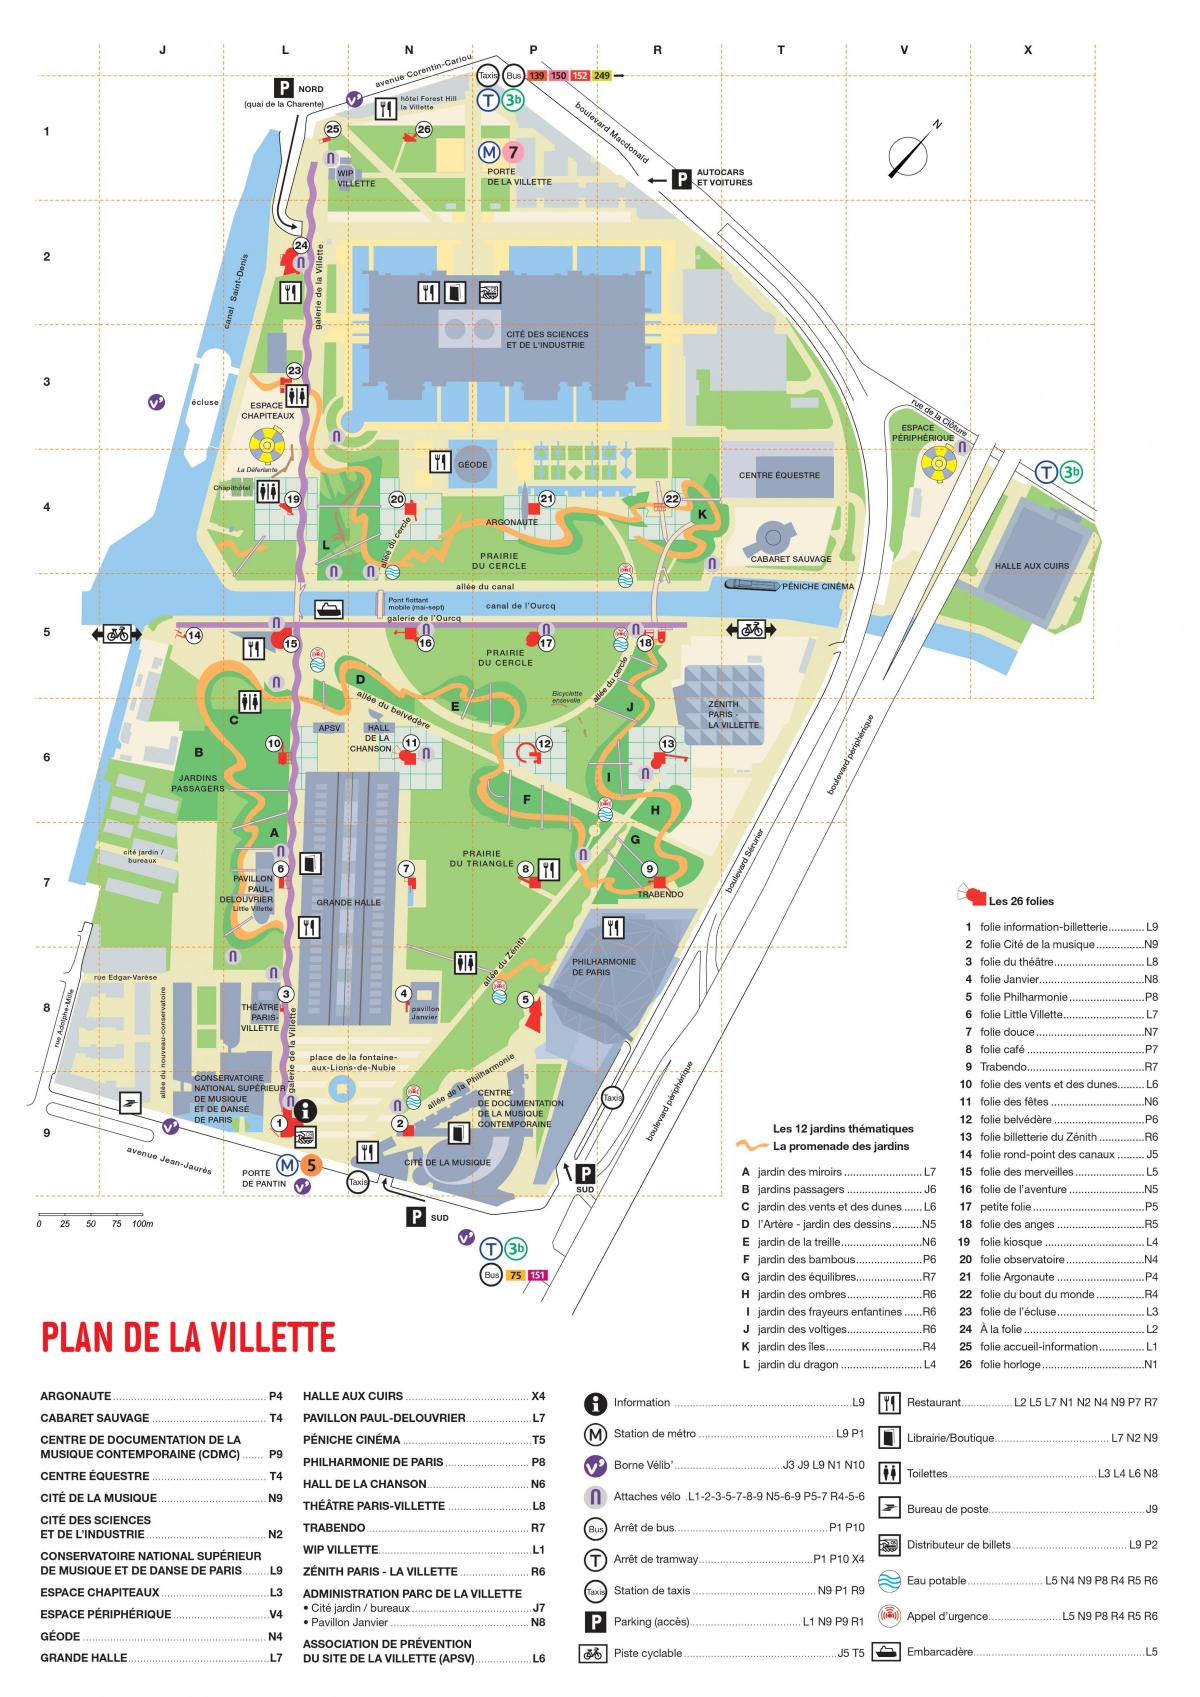 Zemljevid Parc de la Villette